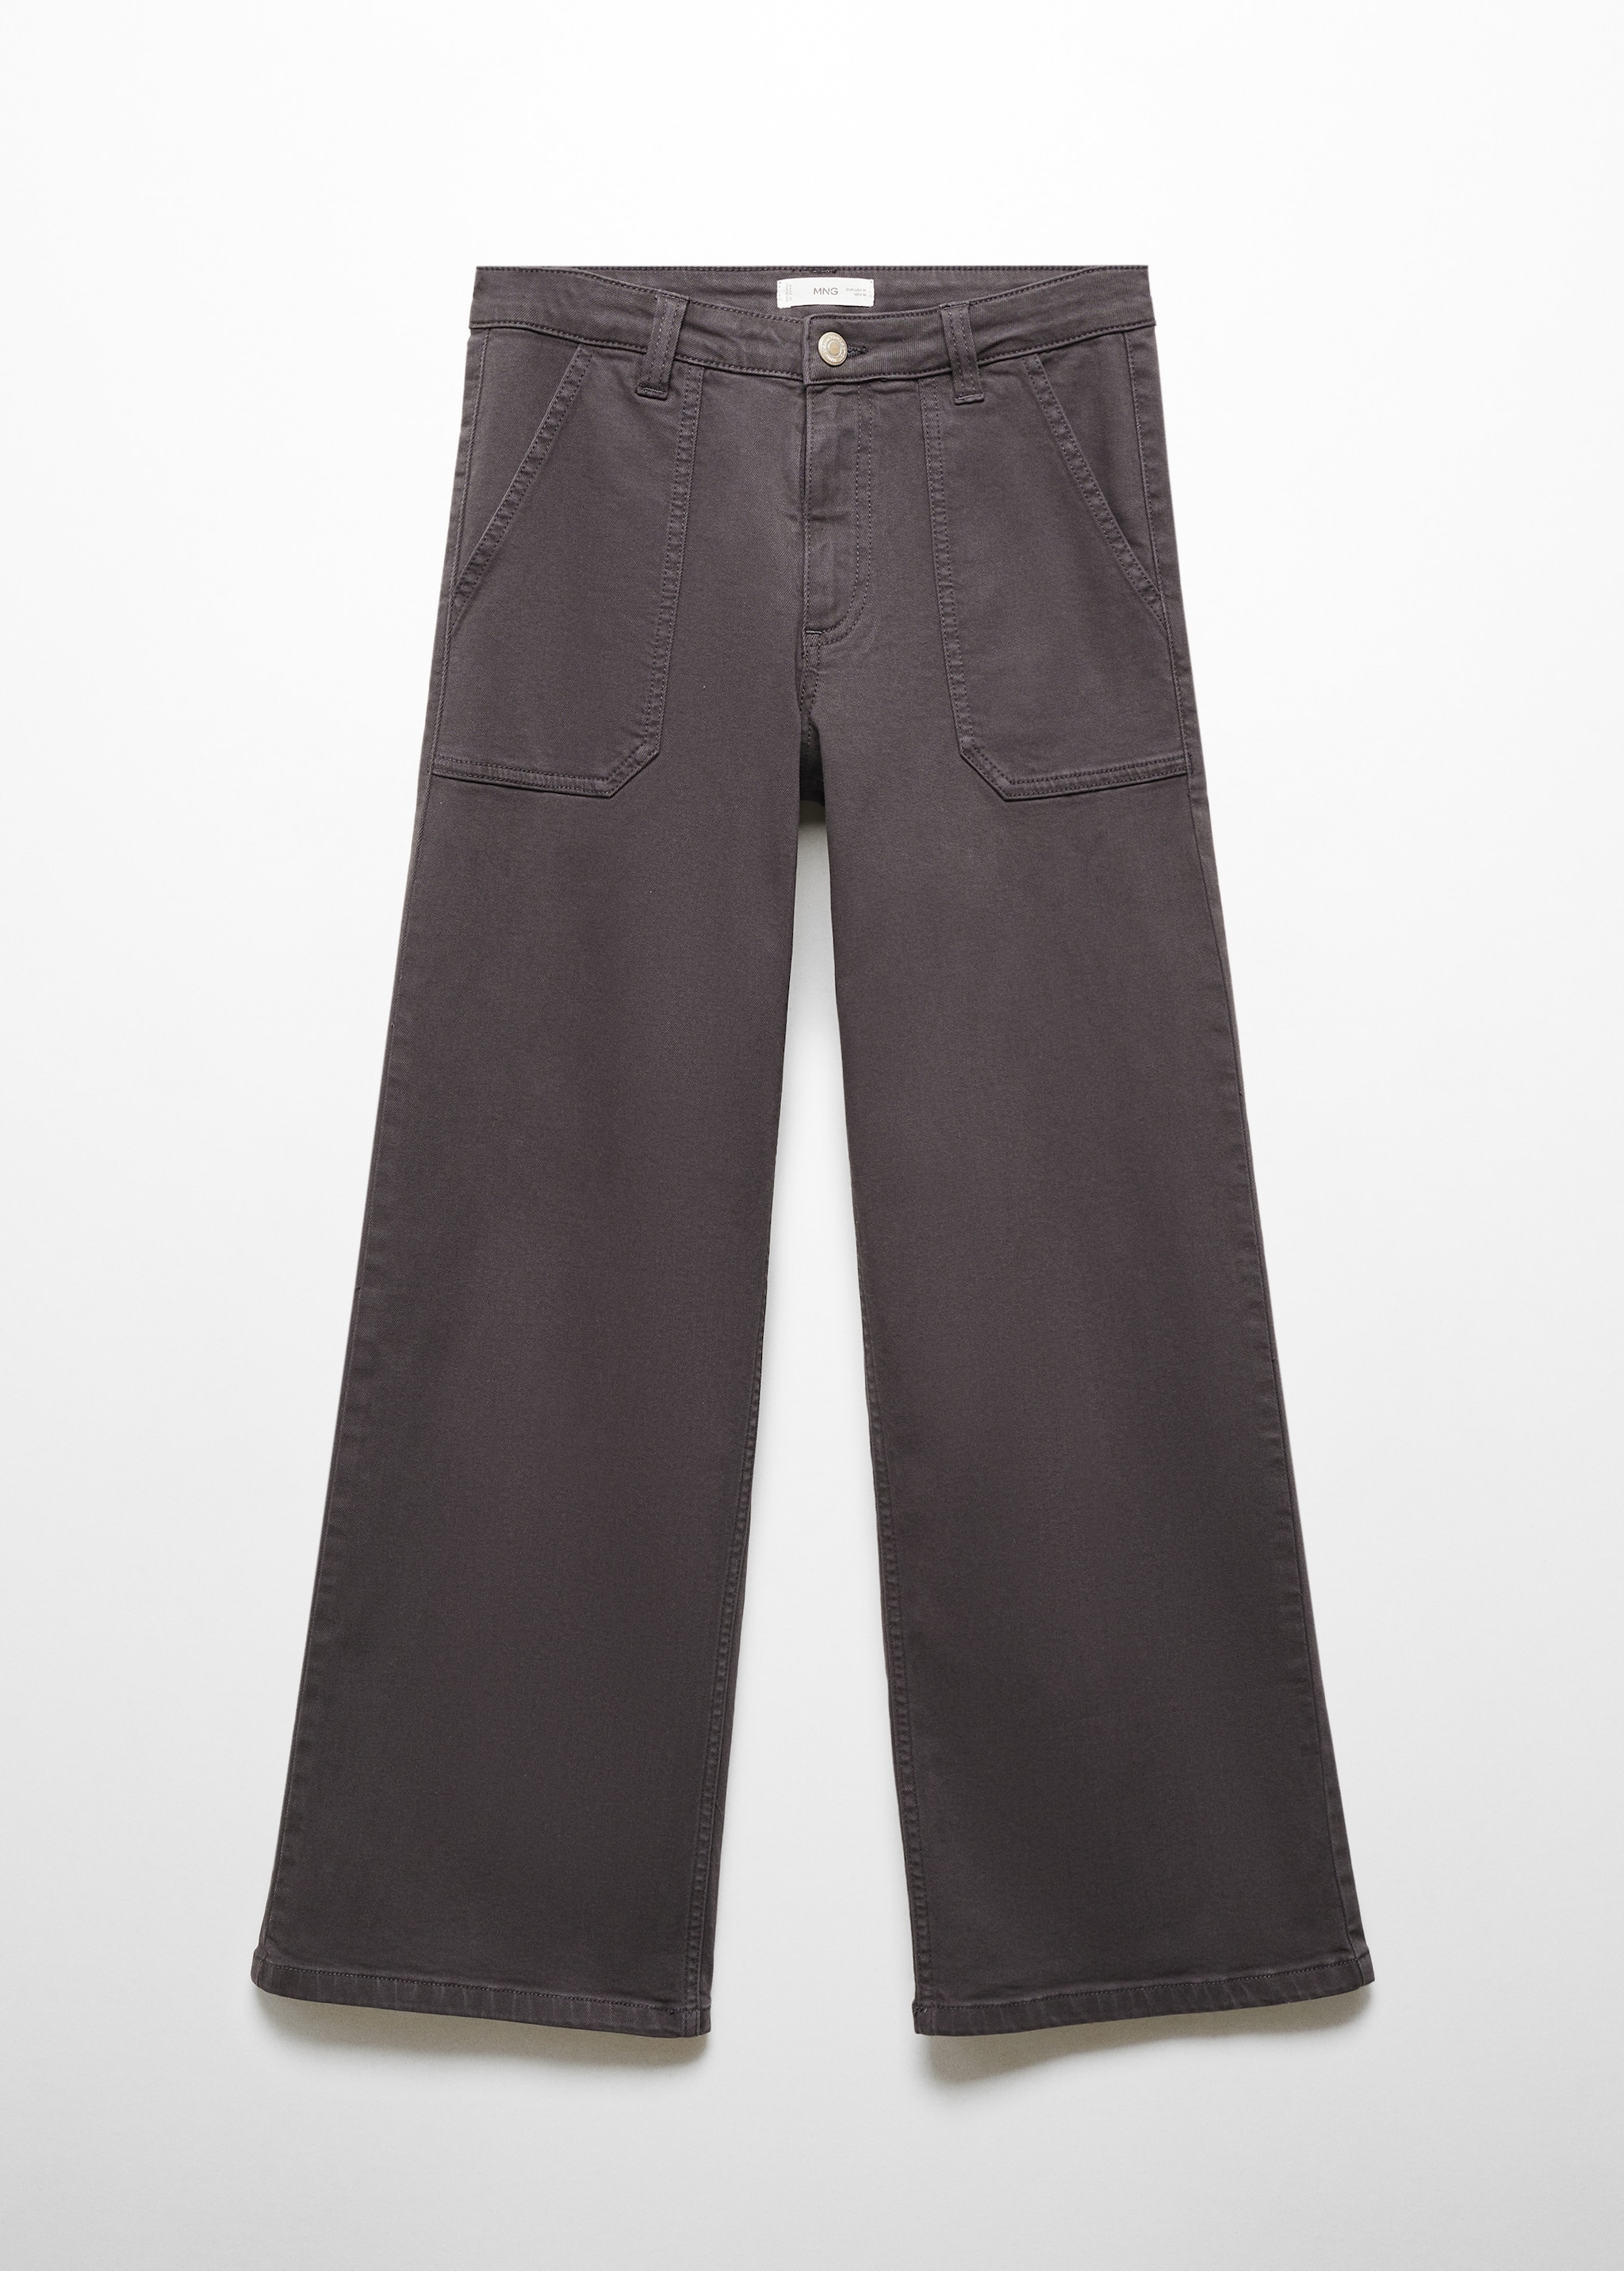 Pantalón culotte bolsillos - Artículo sin modelo